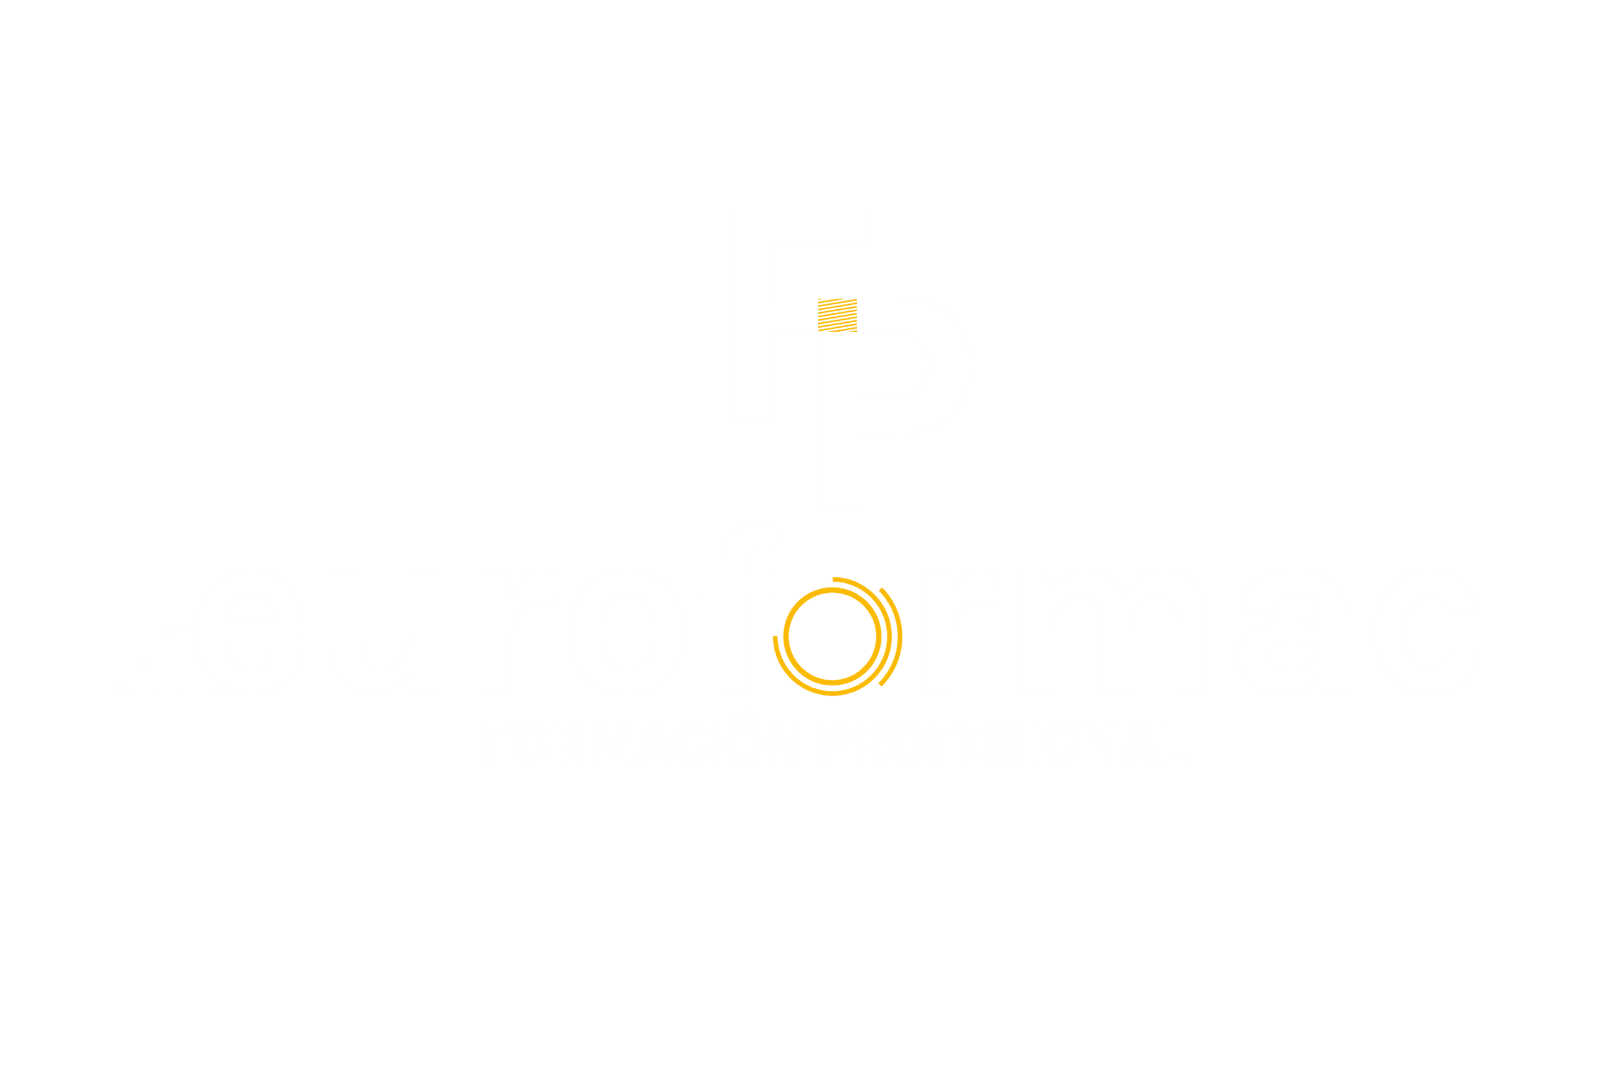 FP Euroformac Madrid